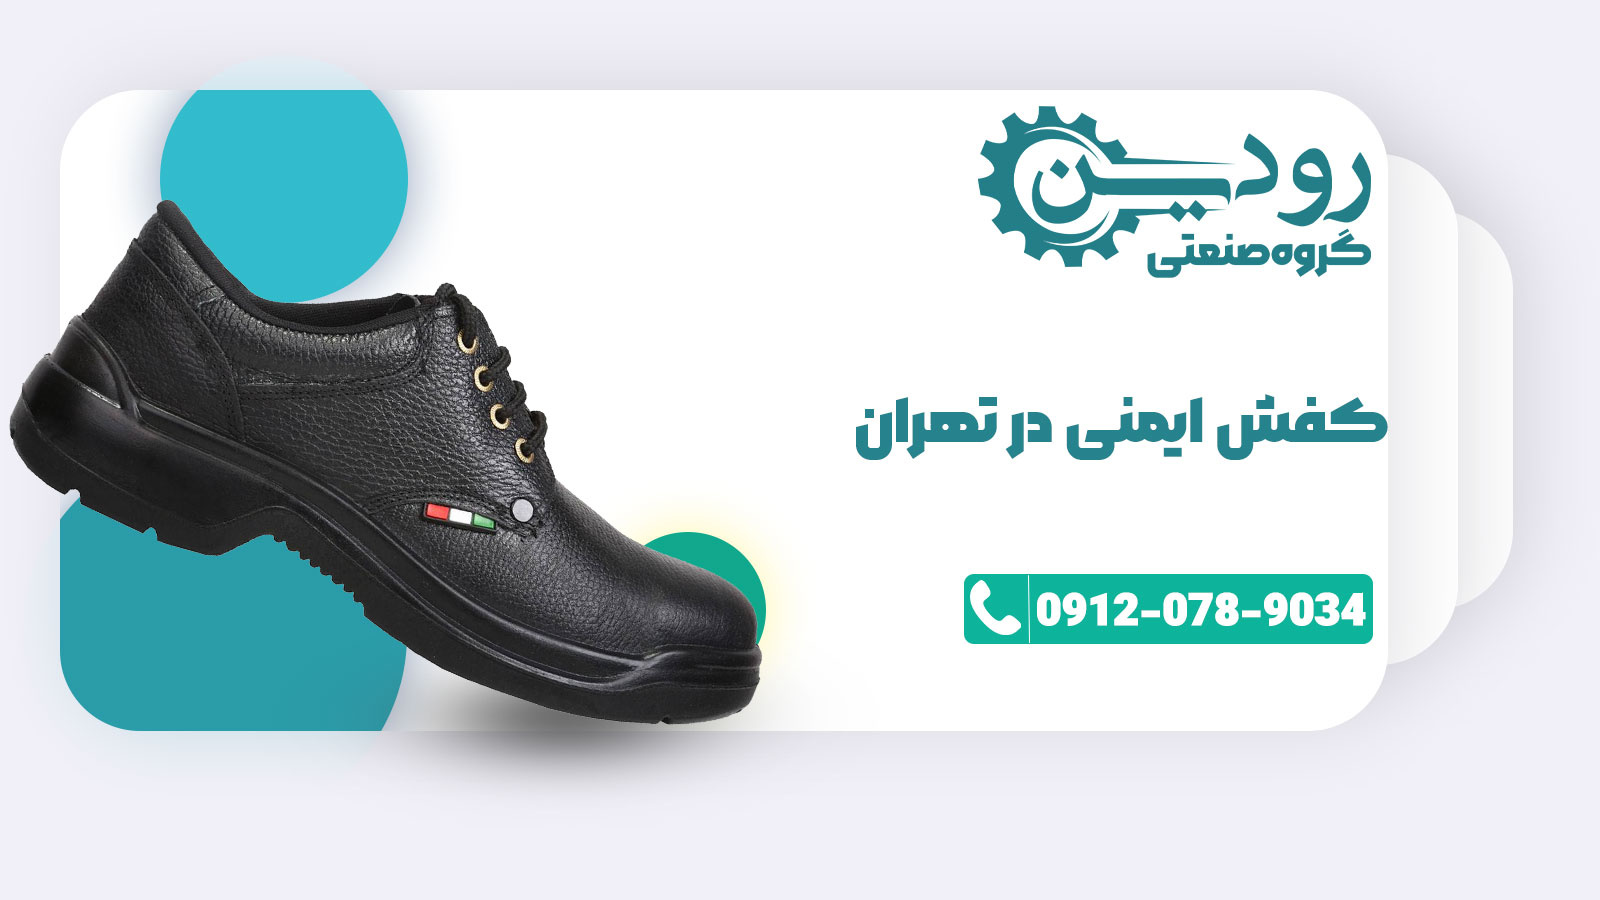 حسن آباد هم در فروش کفش ایمنی شهرت دارد و فروشگاه کفش کار تهران هم در آن جاست.